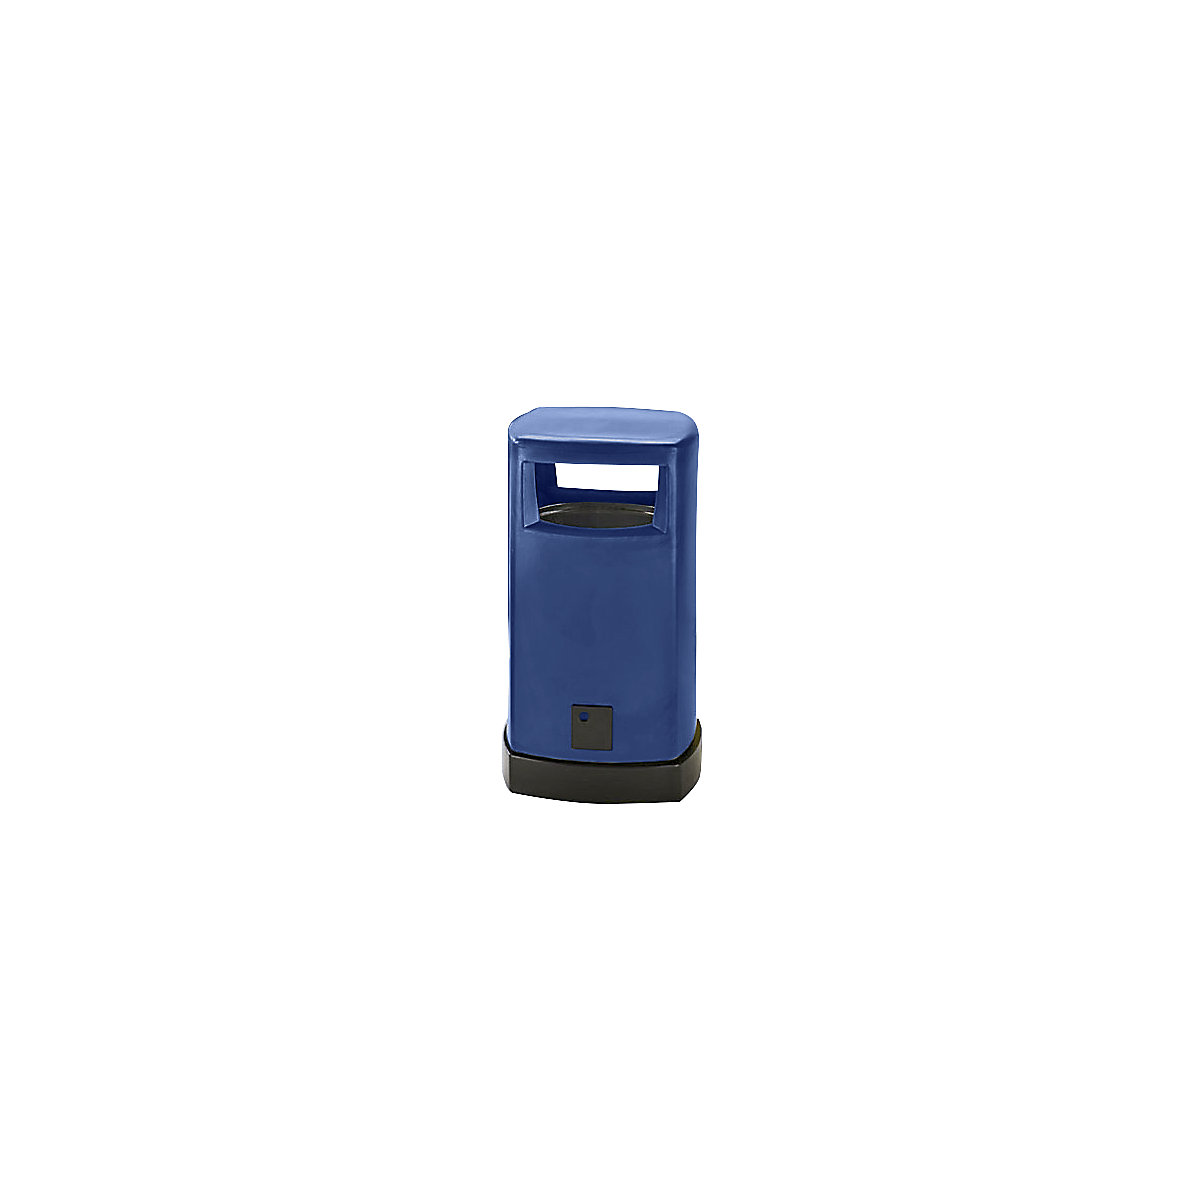 Sběrač odpadů z plastu pro venkovní použití, objem 80 l, š x v x h 530 x 950 x 530 mm, modrá